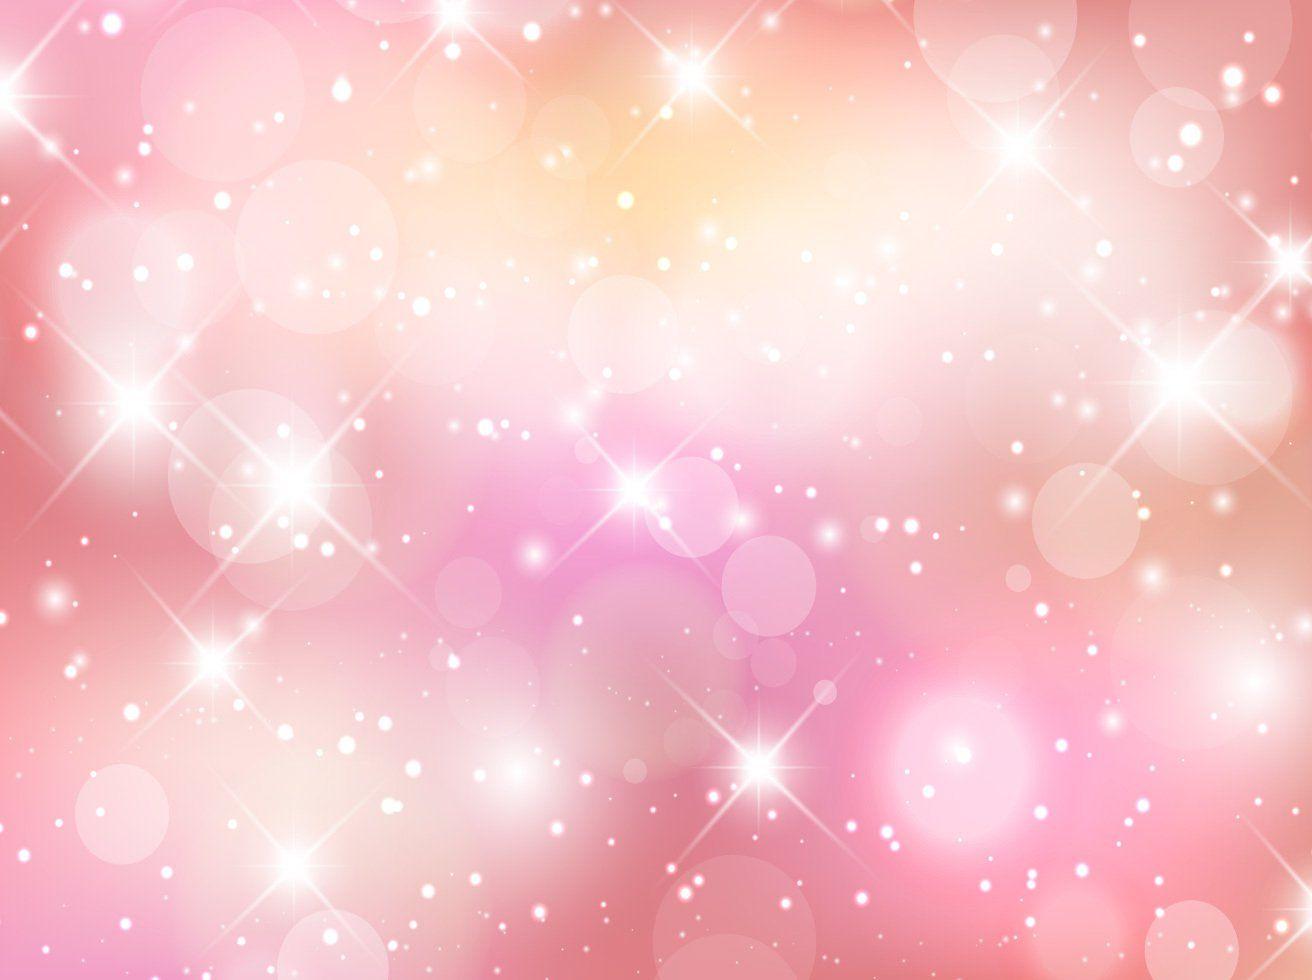 Animestyle glitter background  Stock Illustration 78830611  PIXTA